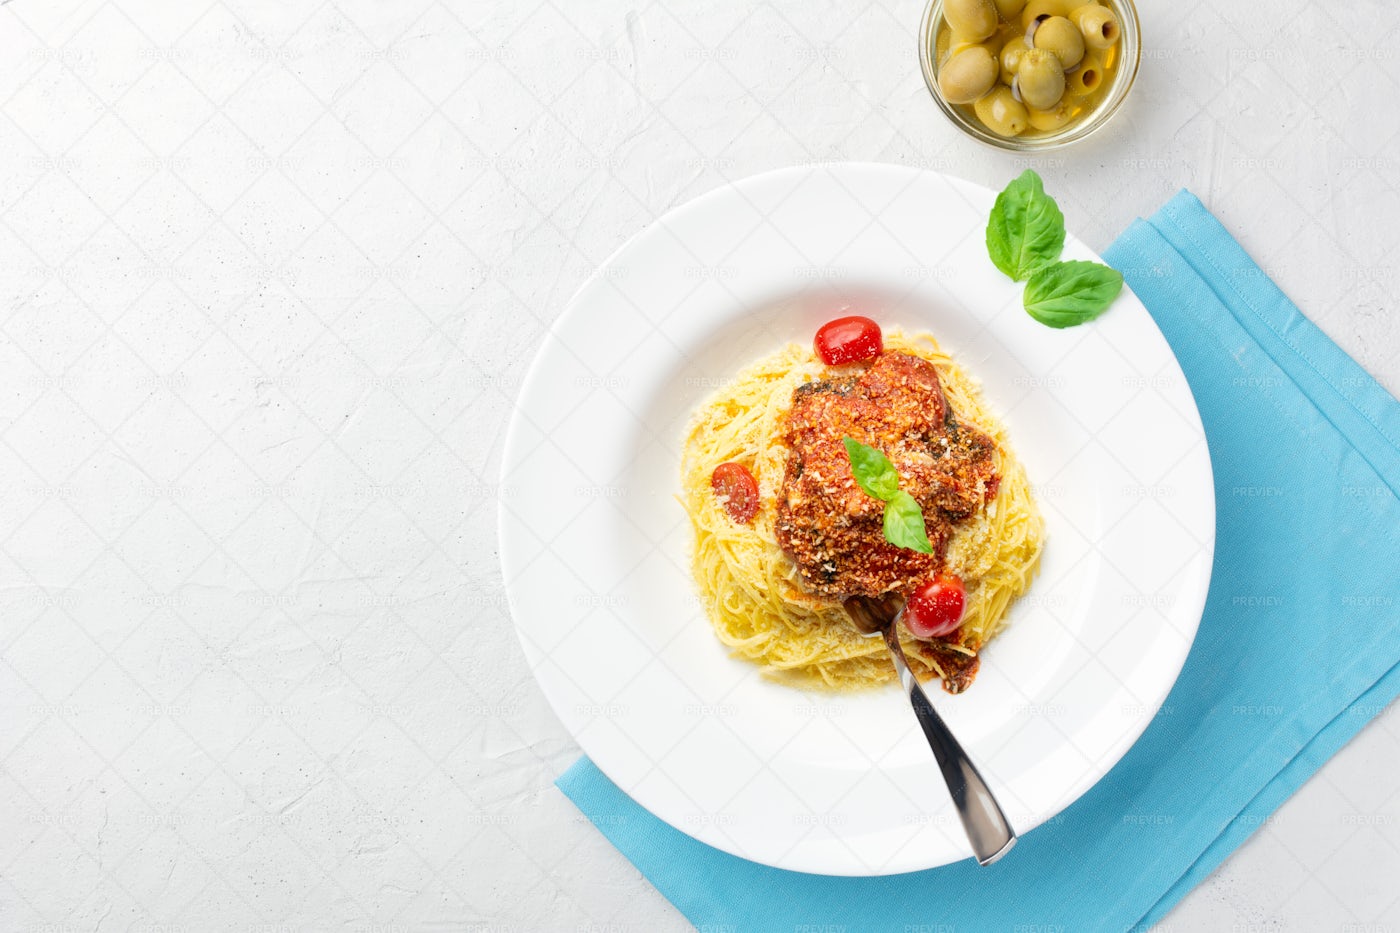 Italian Pasta On A White Plate: Stock Photos